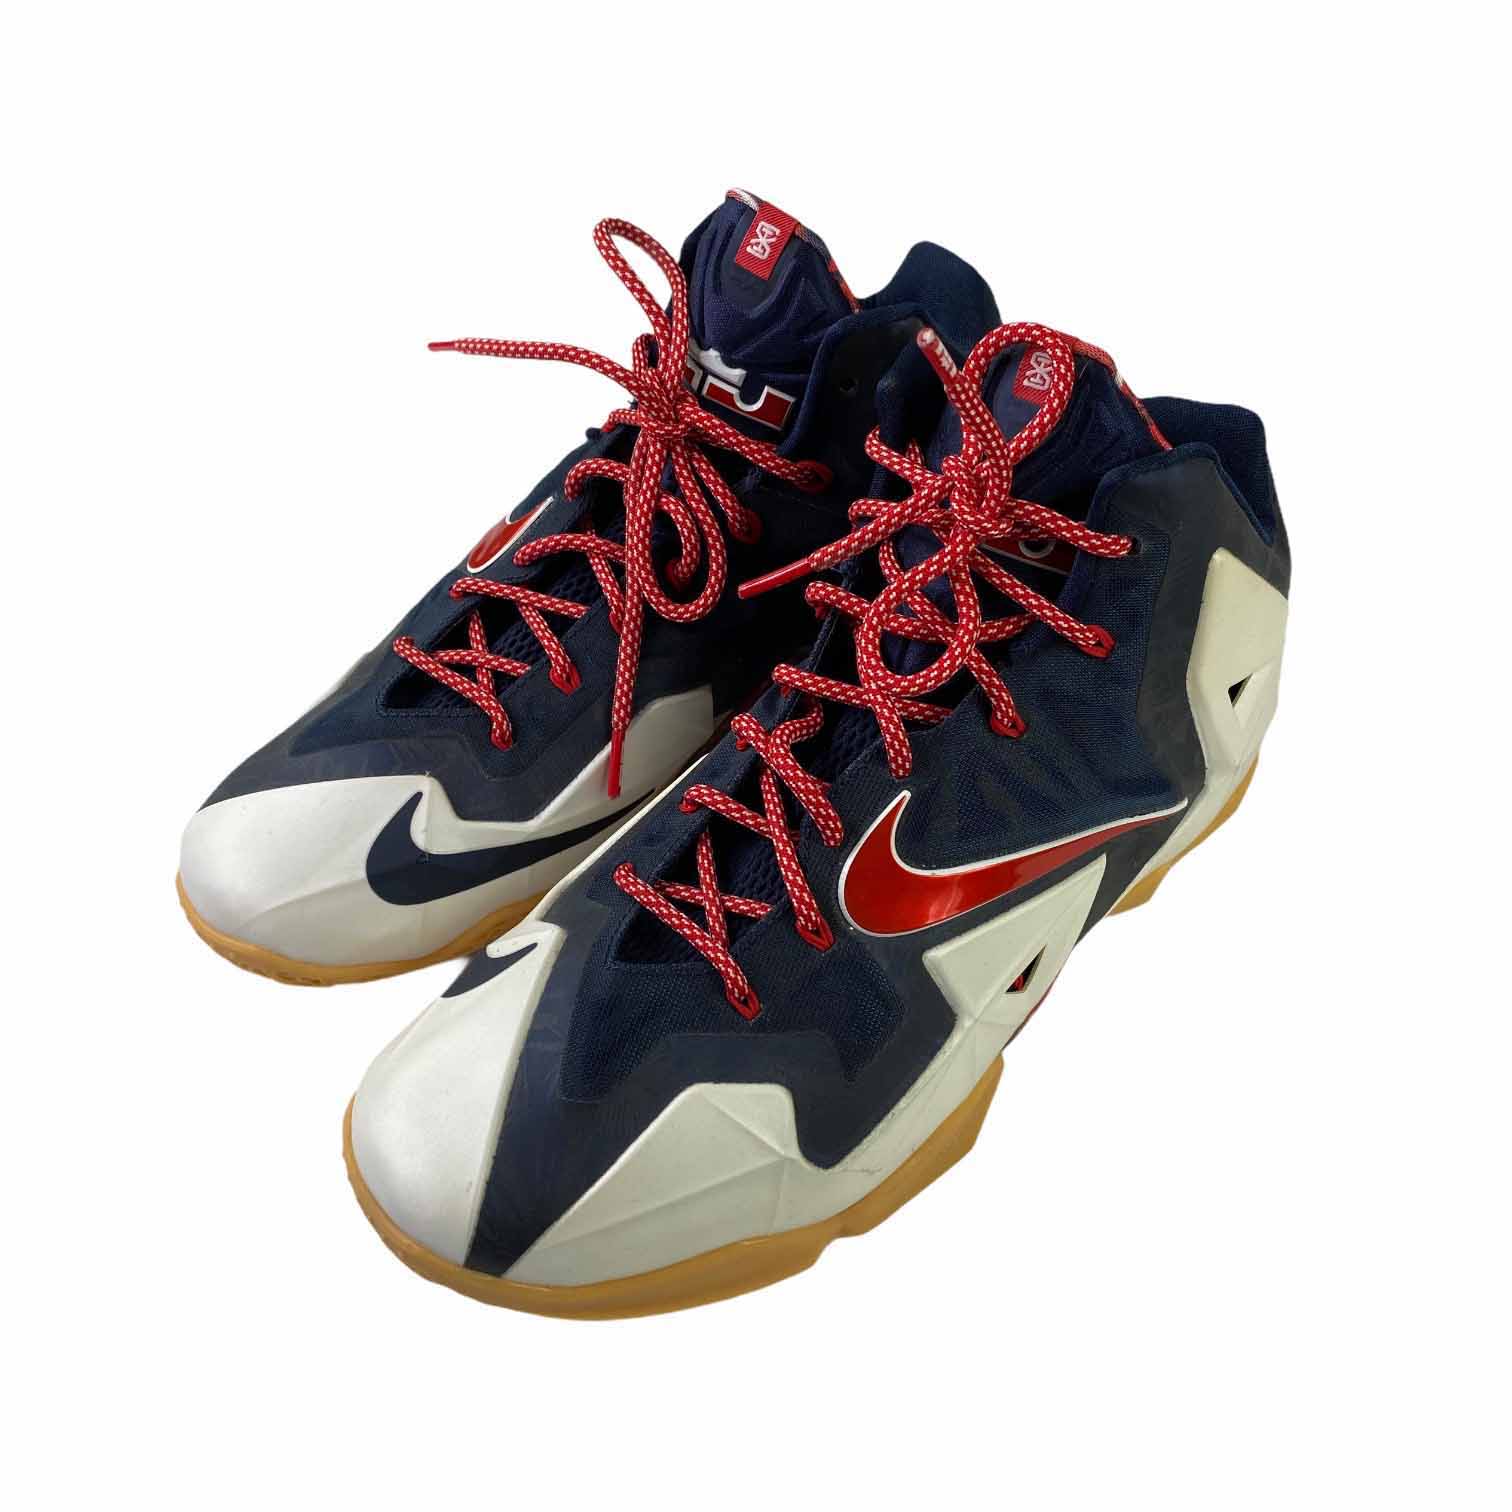 [Nike] Lebron XI - Size 12